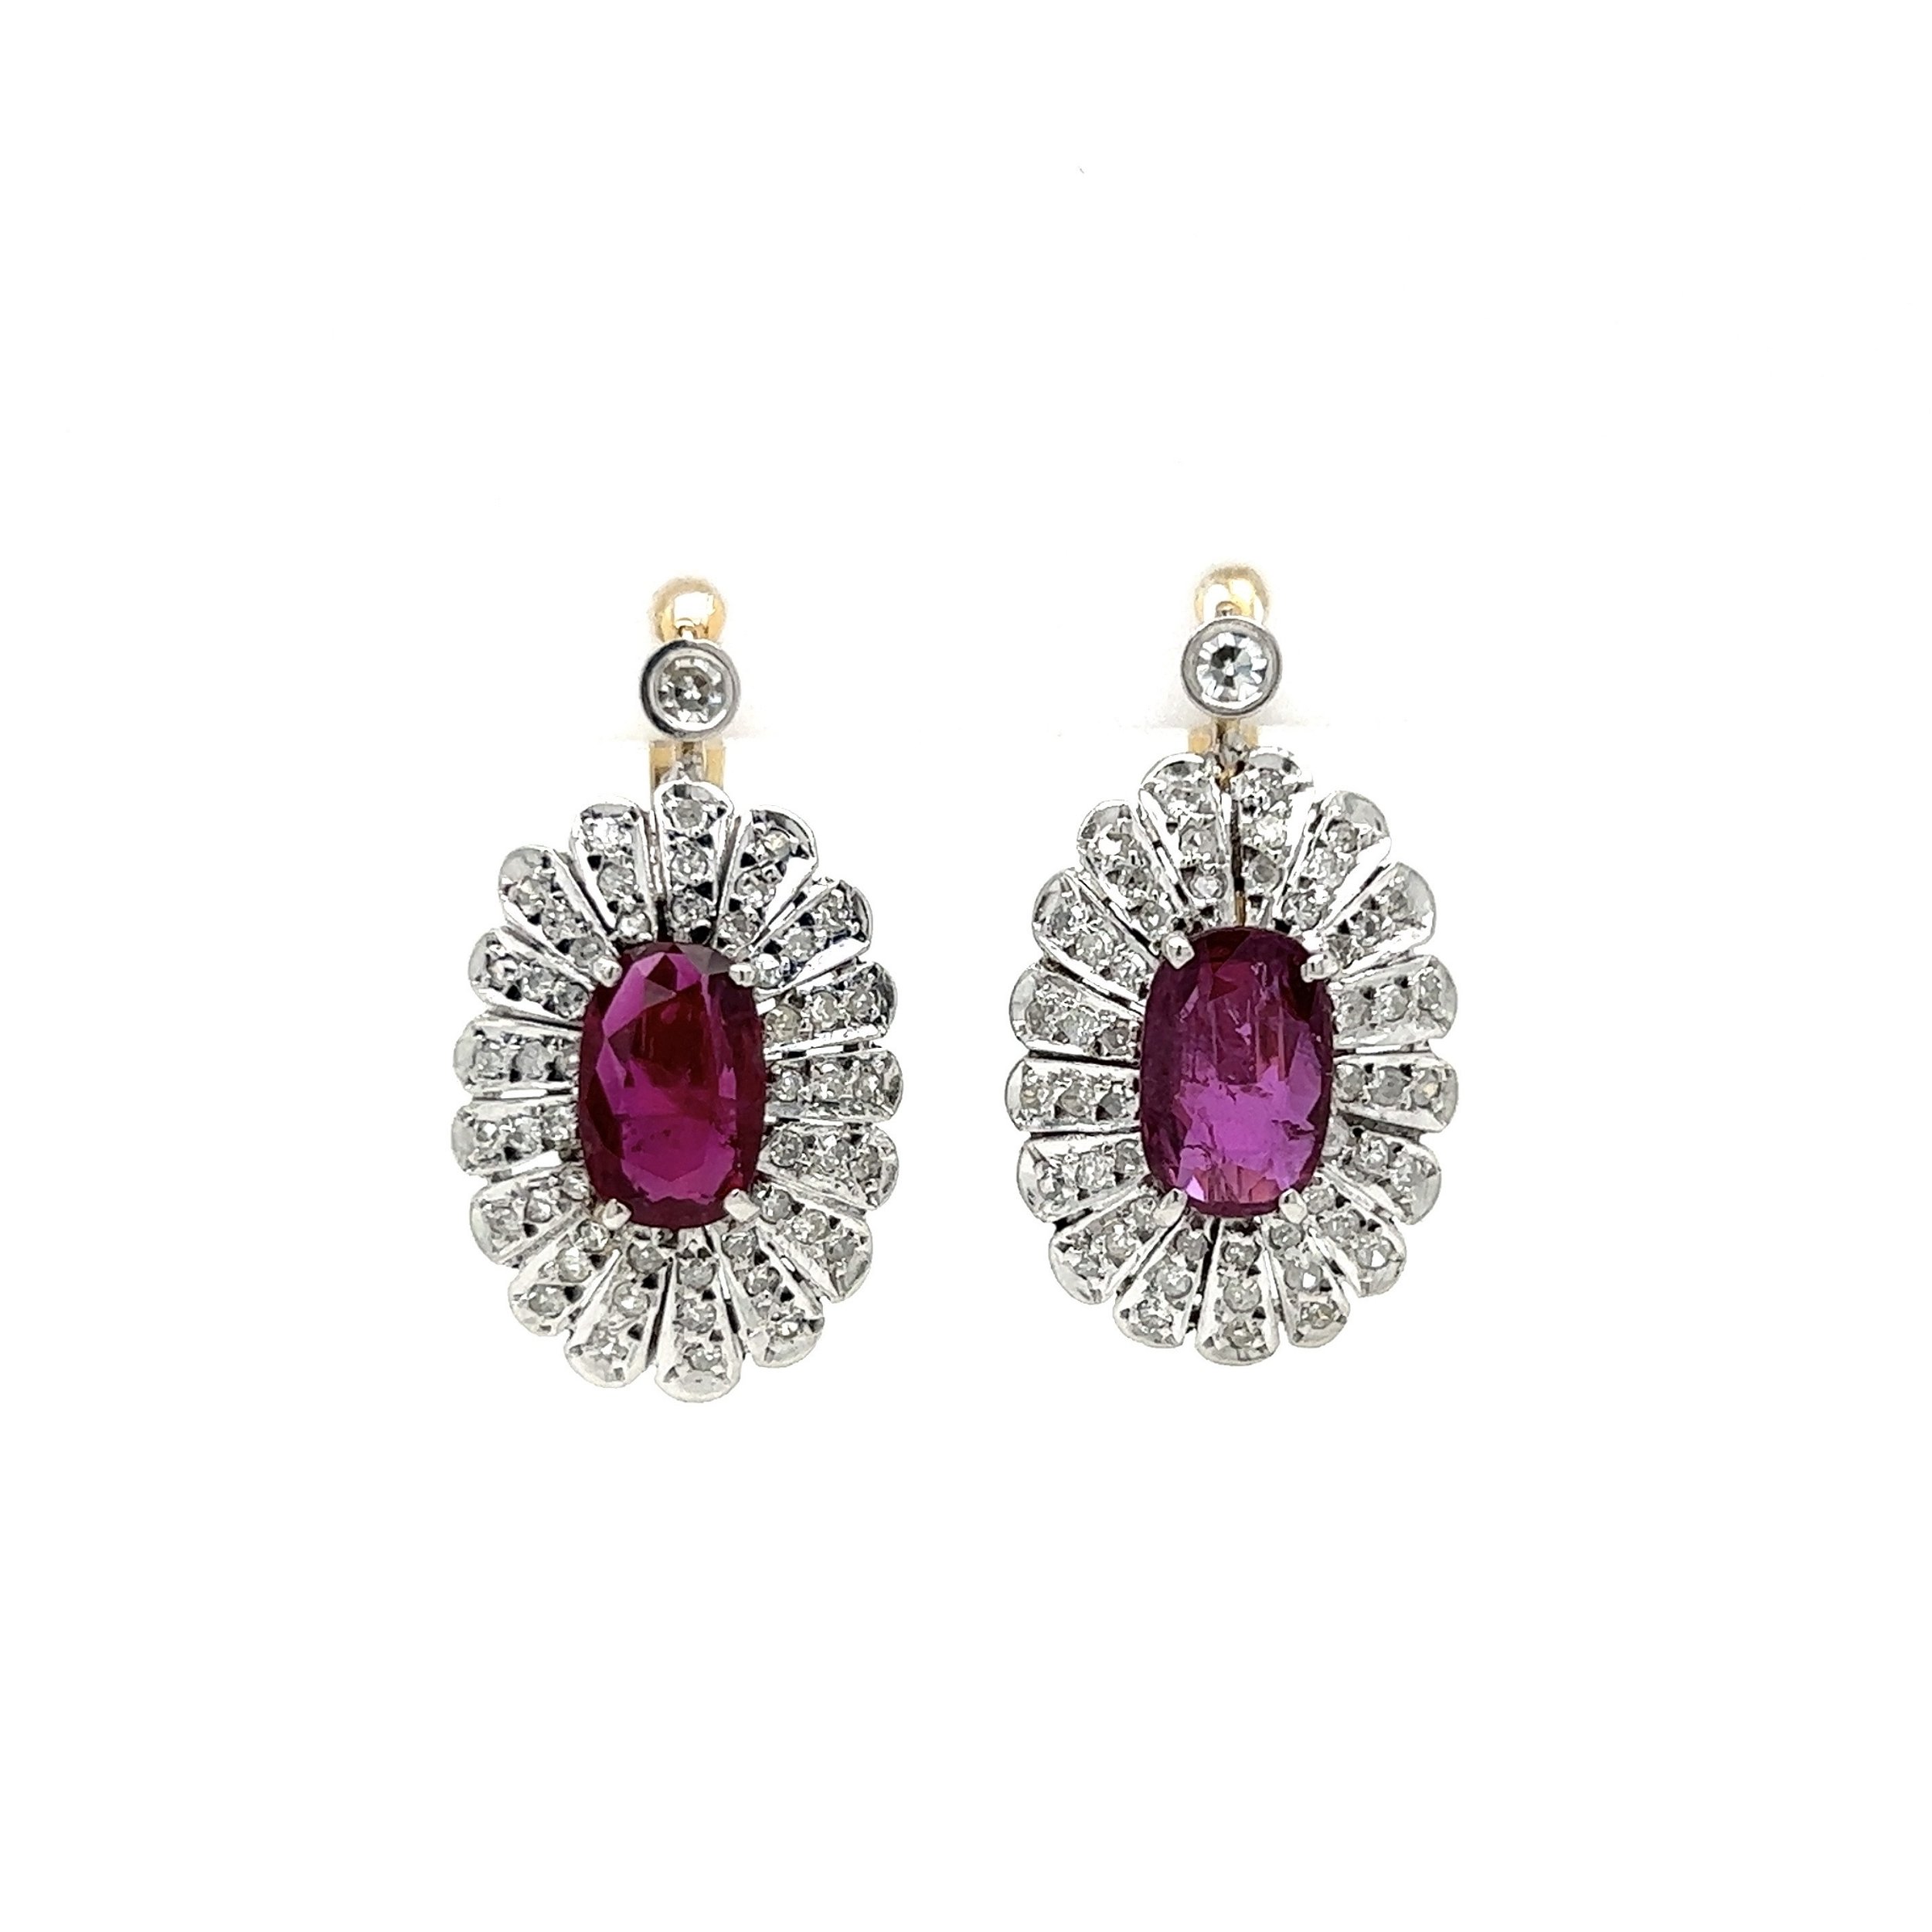 12K 2tone Vintage 2.91tcw Oval Ruby & 1.06tcw Diamond Earrings 7.6g, 1"